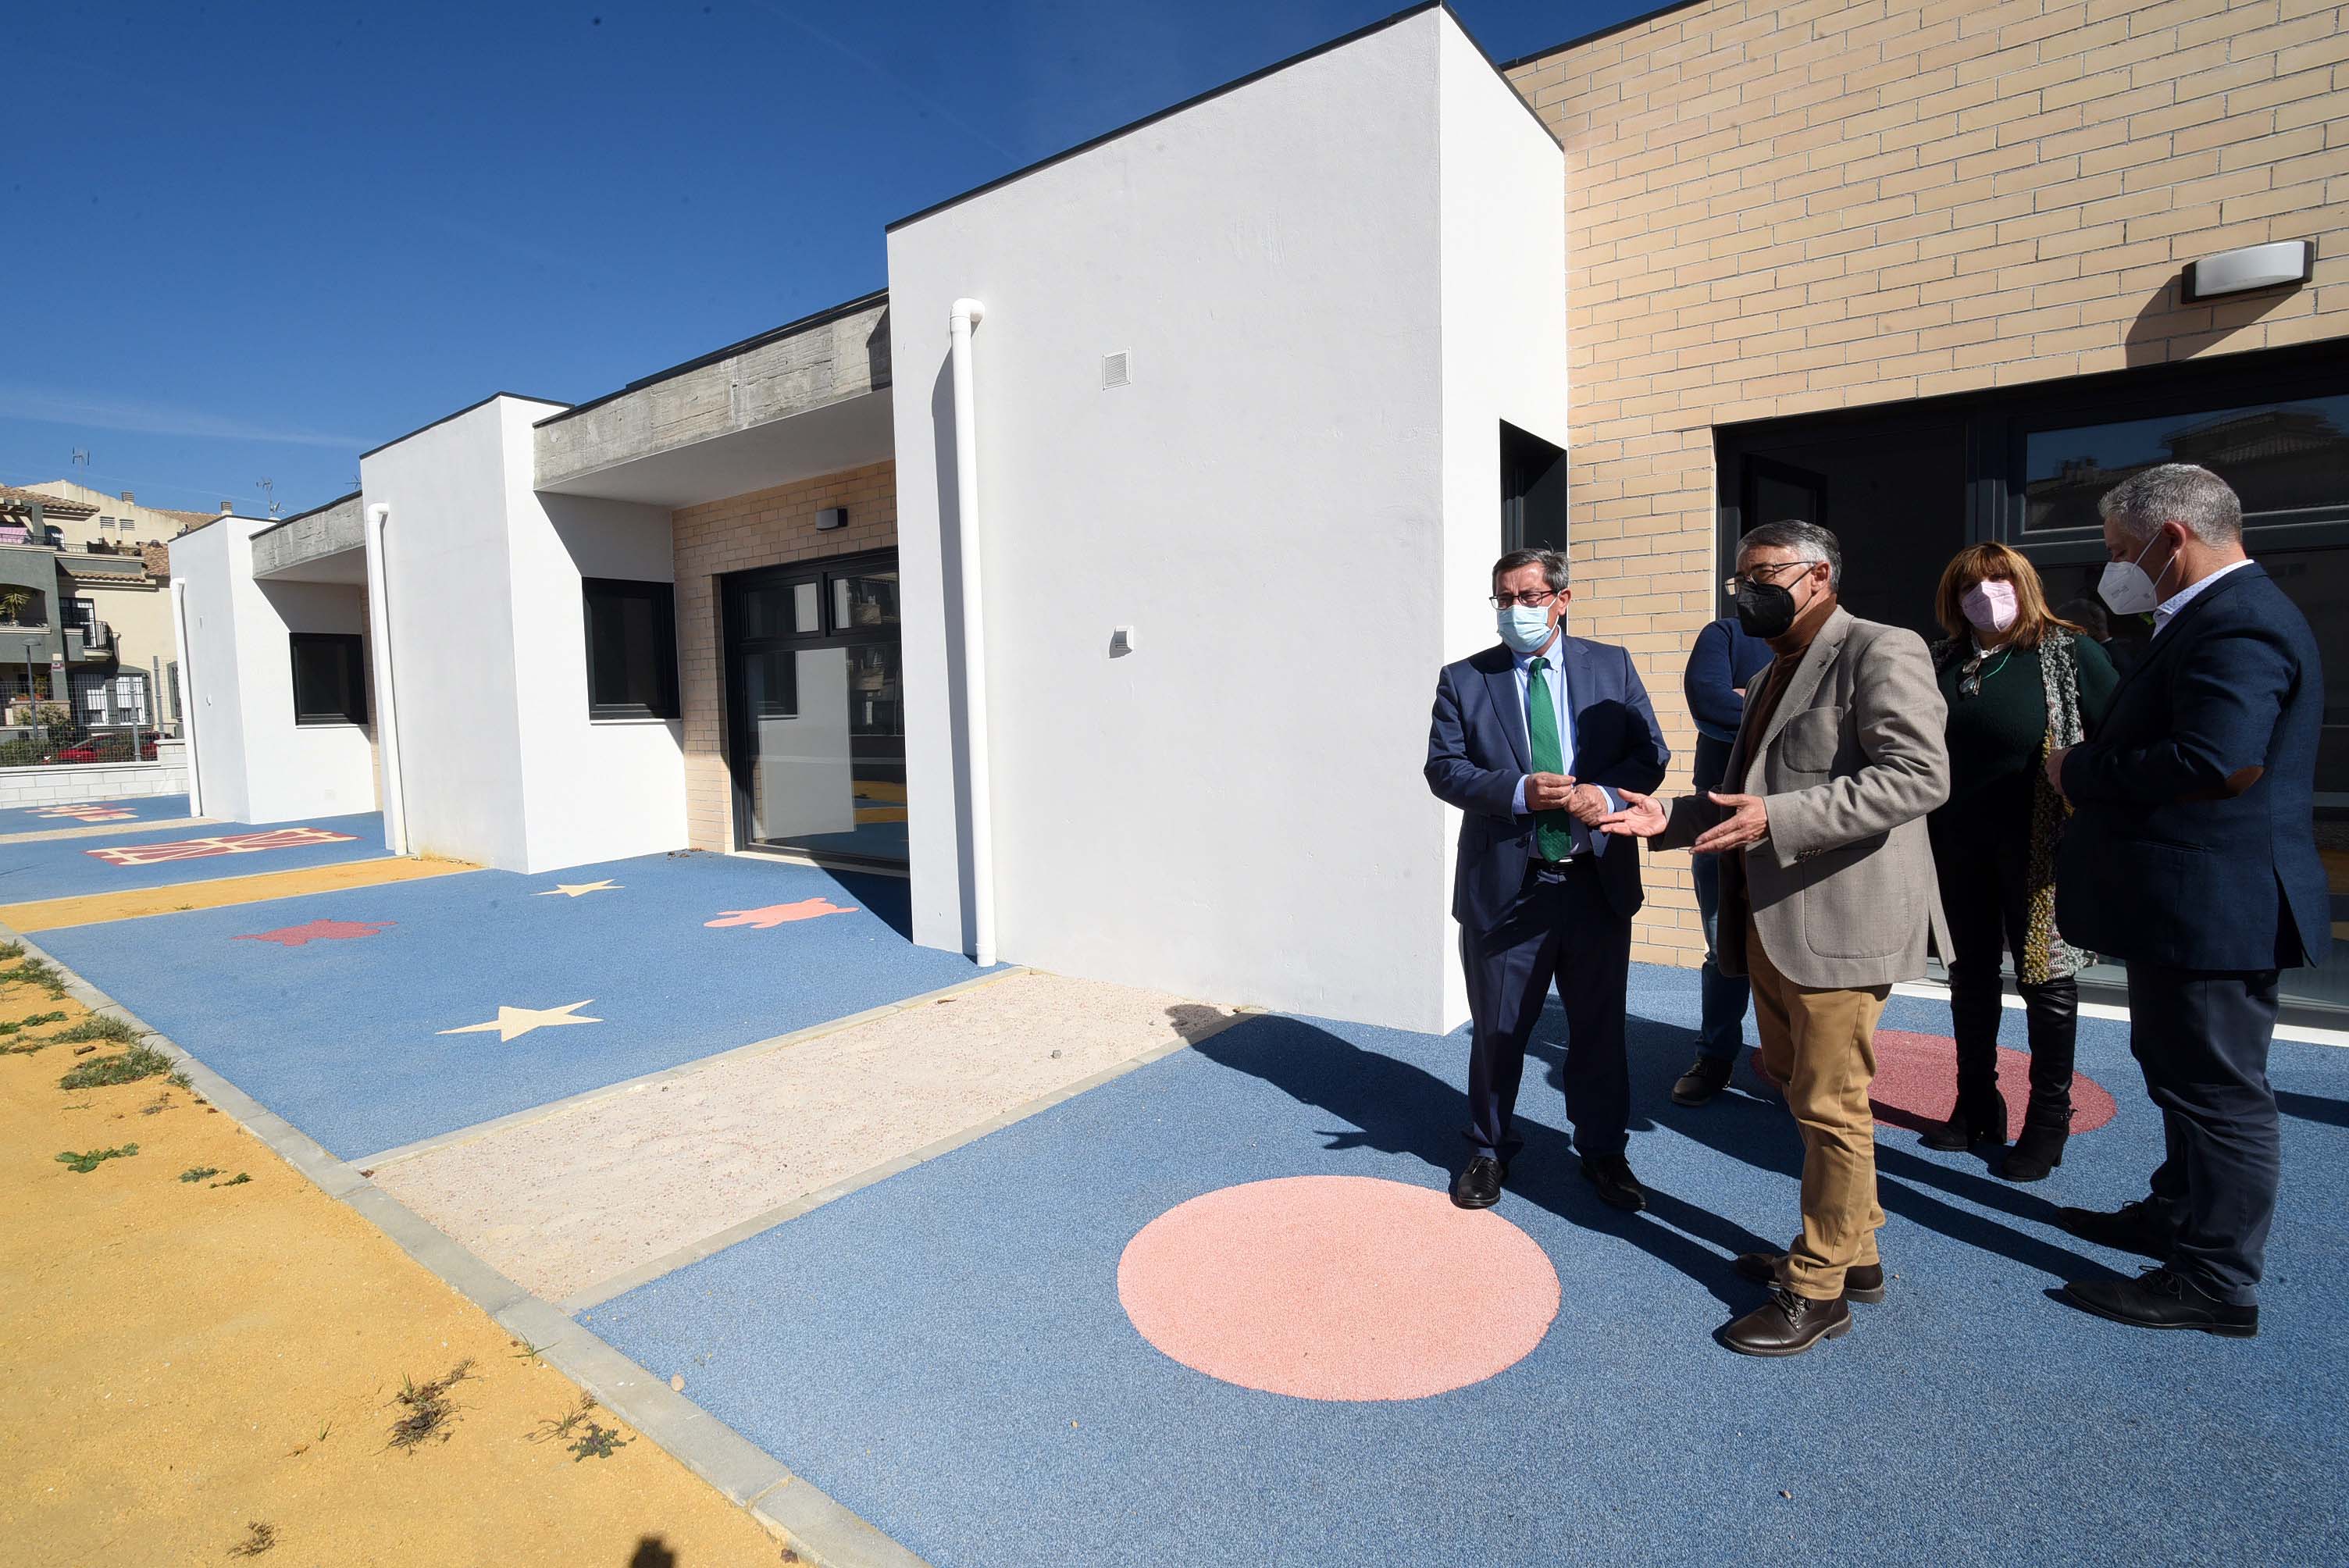 Diputación construirá un centro polivalente por valor de más de un millón de euros en un barrio degradado de Atarfe